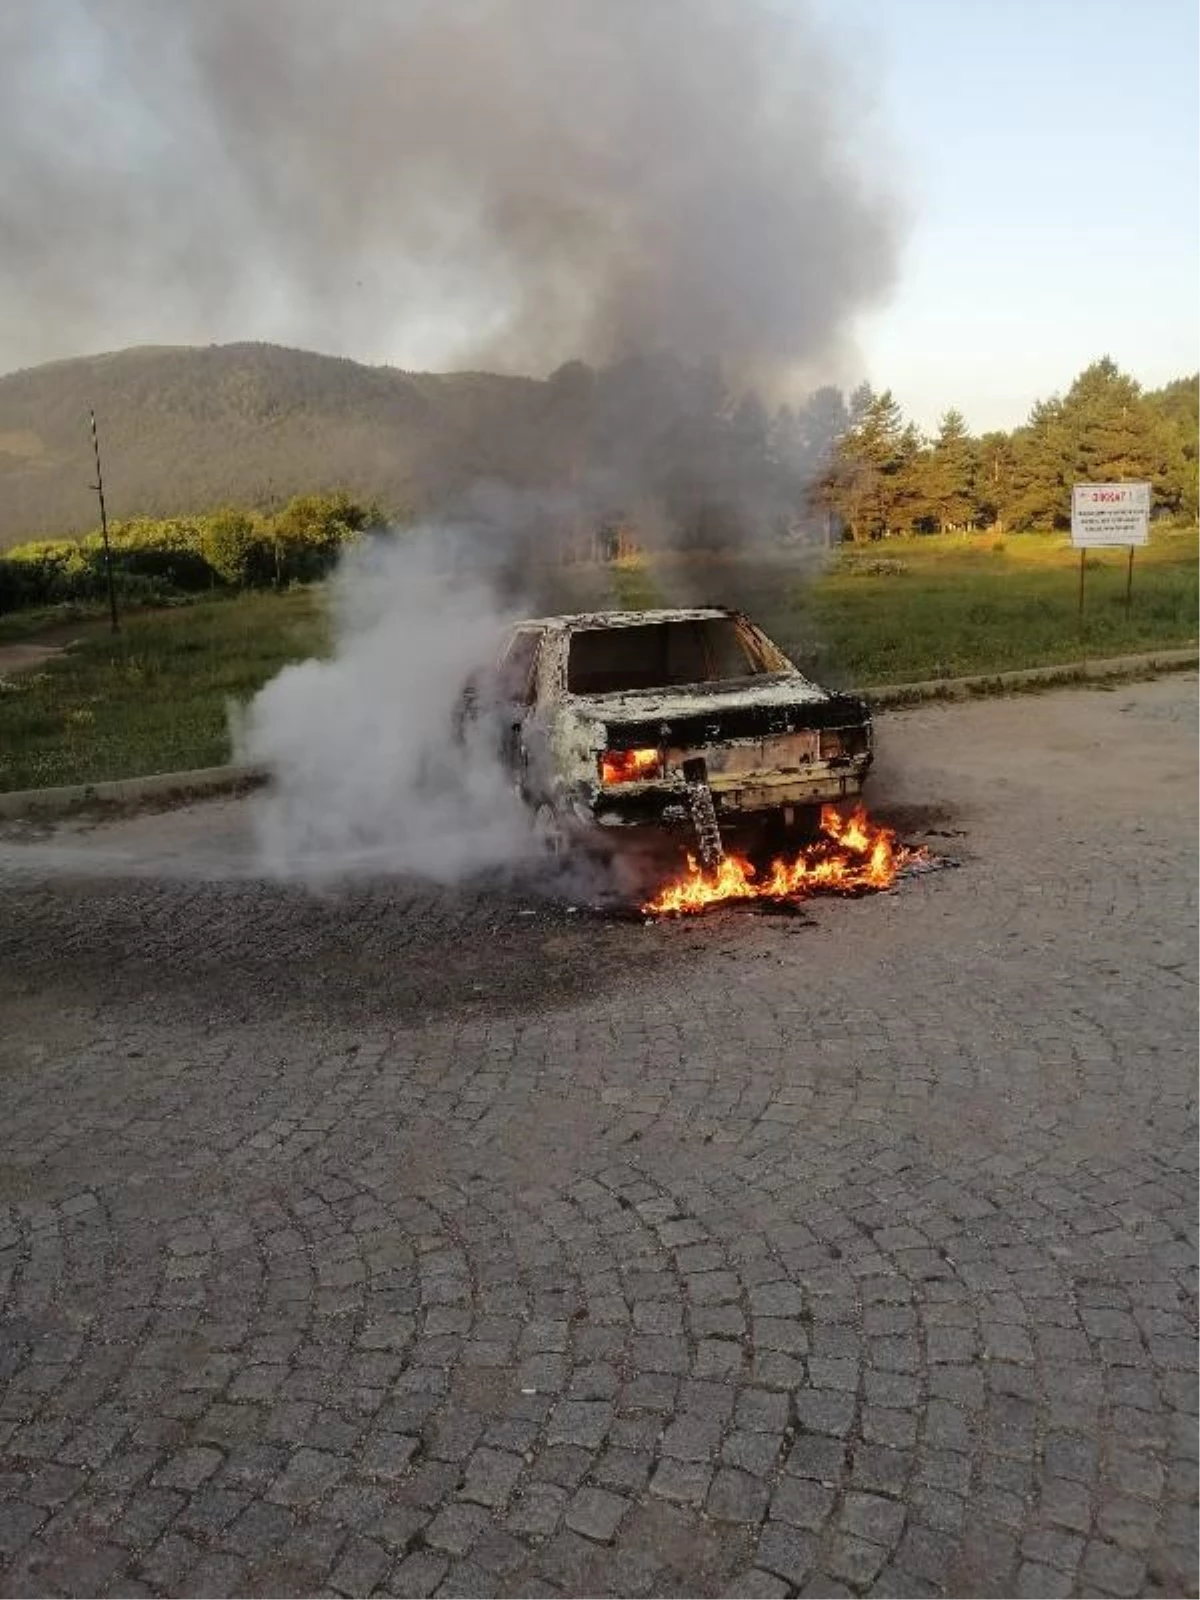 Abant Gölü Ulusal Parkı'nda Araba Yangını